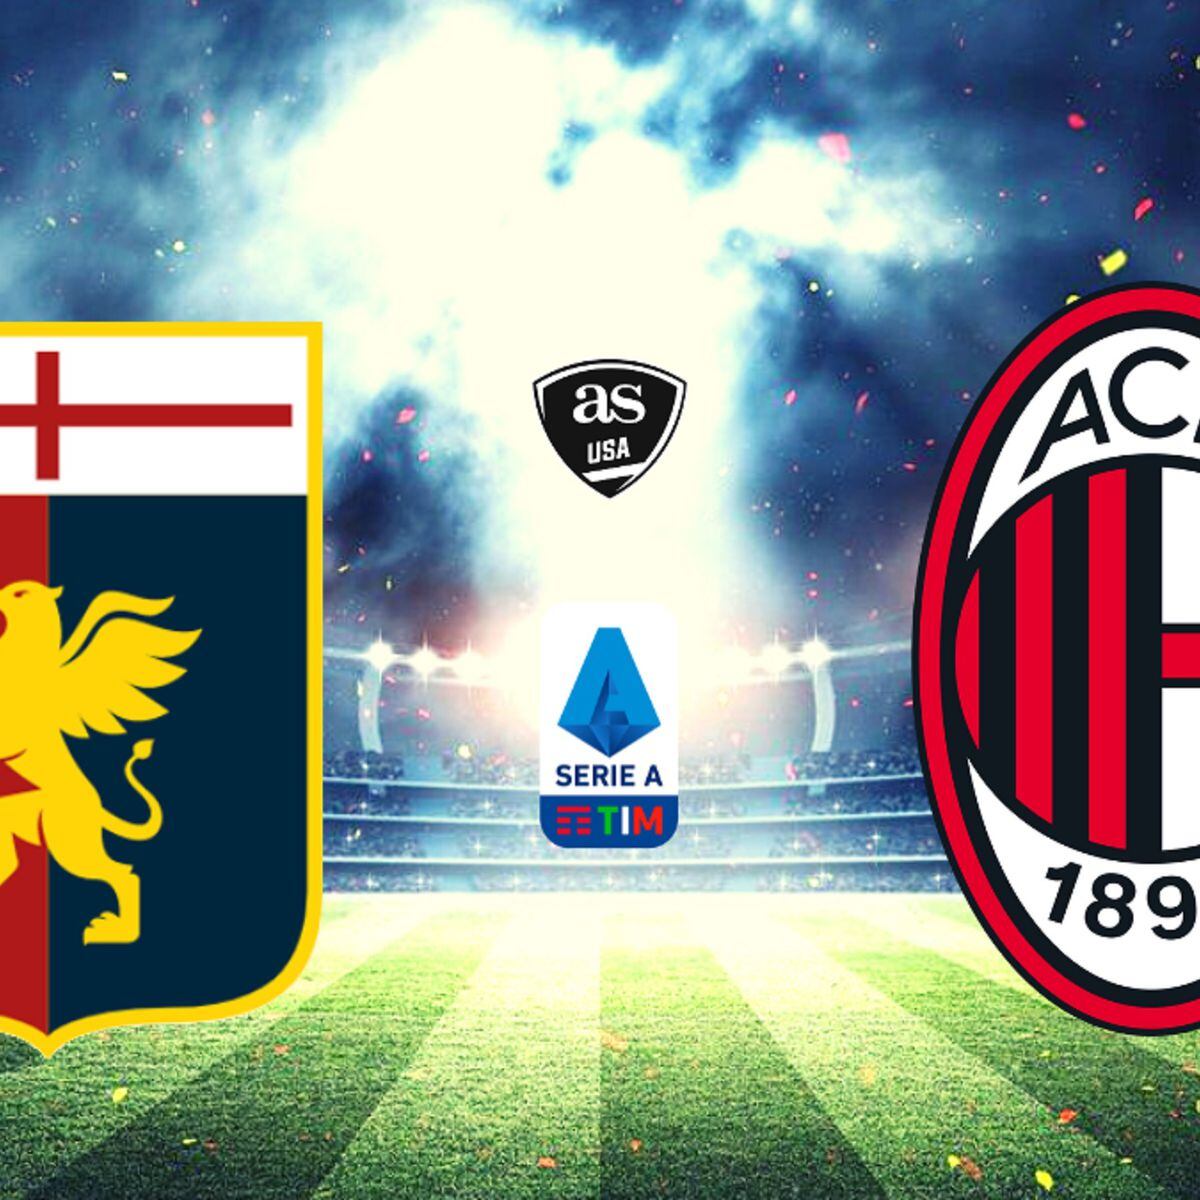 AC Milan VS Genoa CFC 1-0, Serie A TIM 2011/12, A.C. Milan